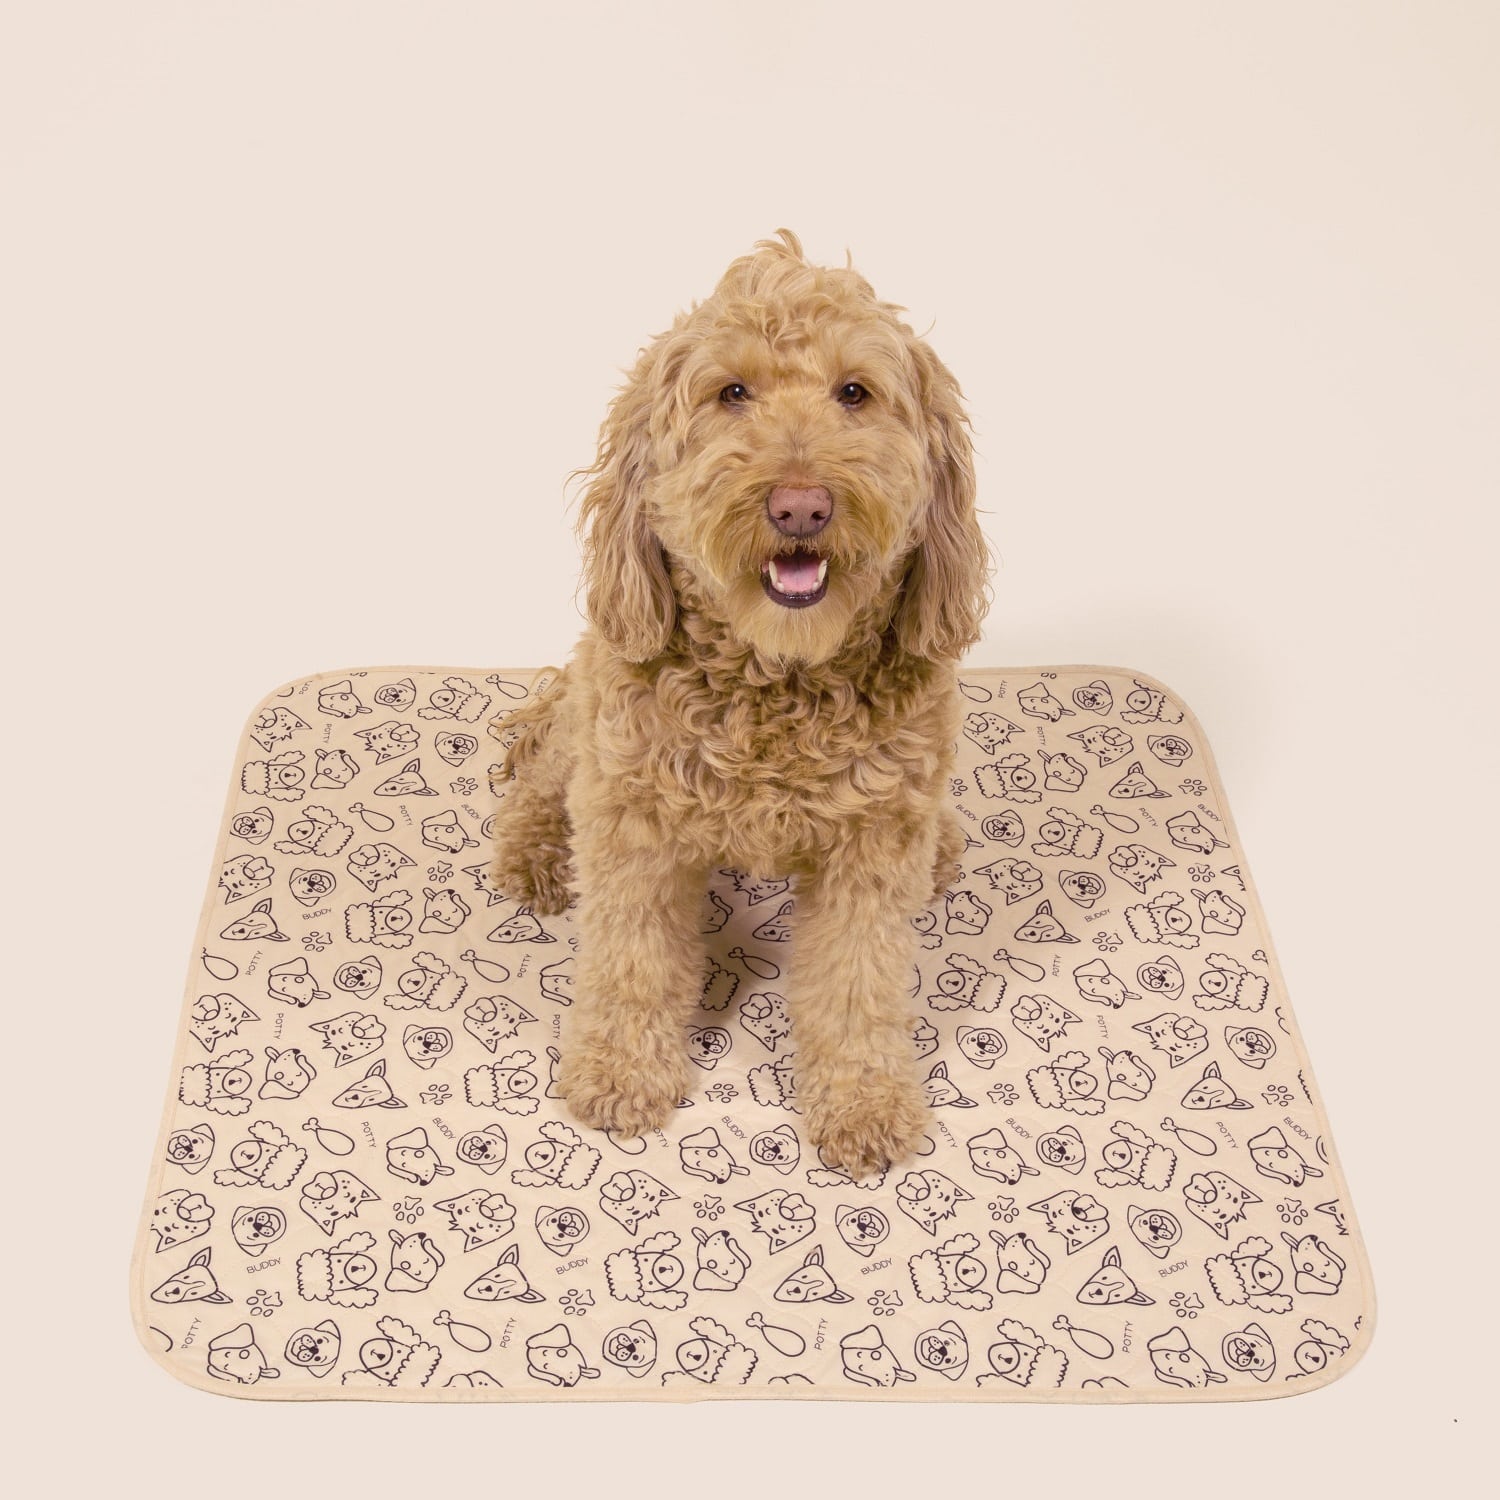 Dog Door Mat, Ultra Absorbent Dog Mat, Waterproof Dog Bowl Mat